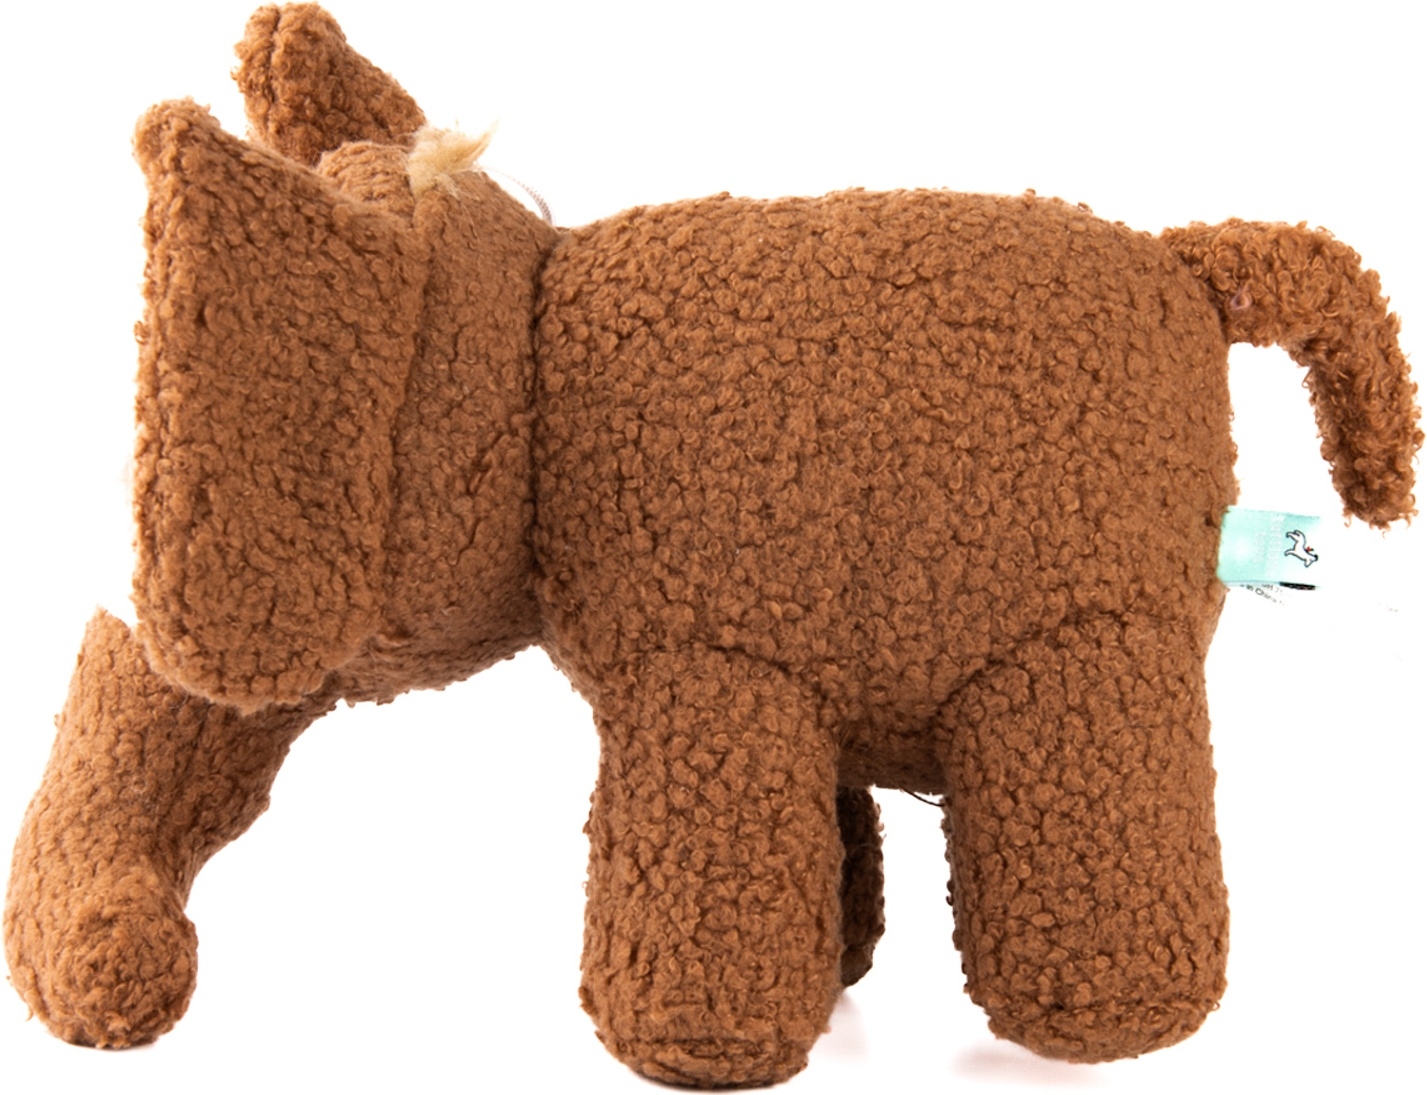 Игрушка для собак TUFFLOVE Мамонт 27 см коричневый (WB24291-VA) - Фото 4